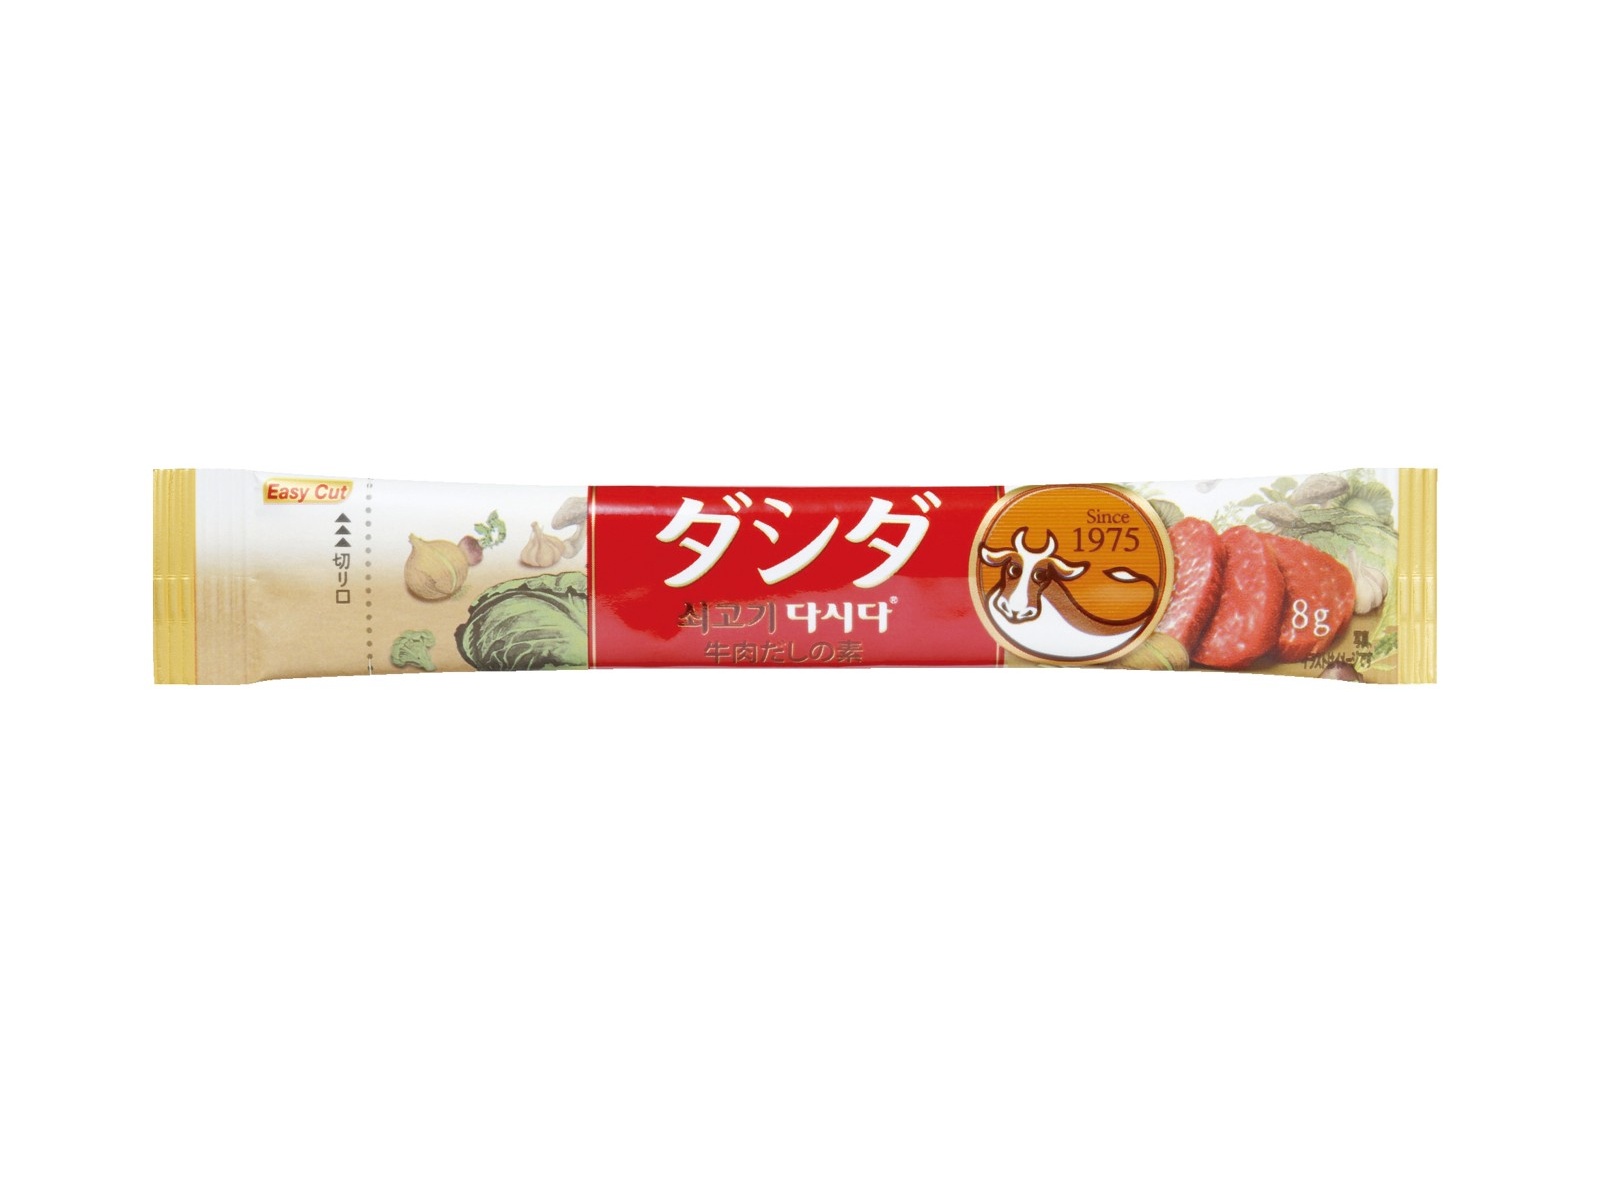 CJフーズジャパン 牛肉ダシダスティック 8g×12本入| コープこうべネット